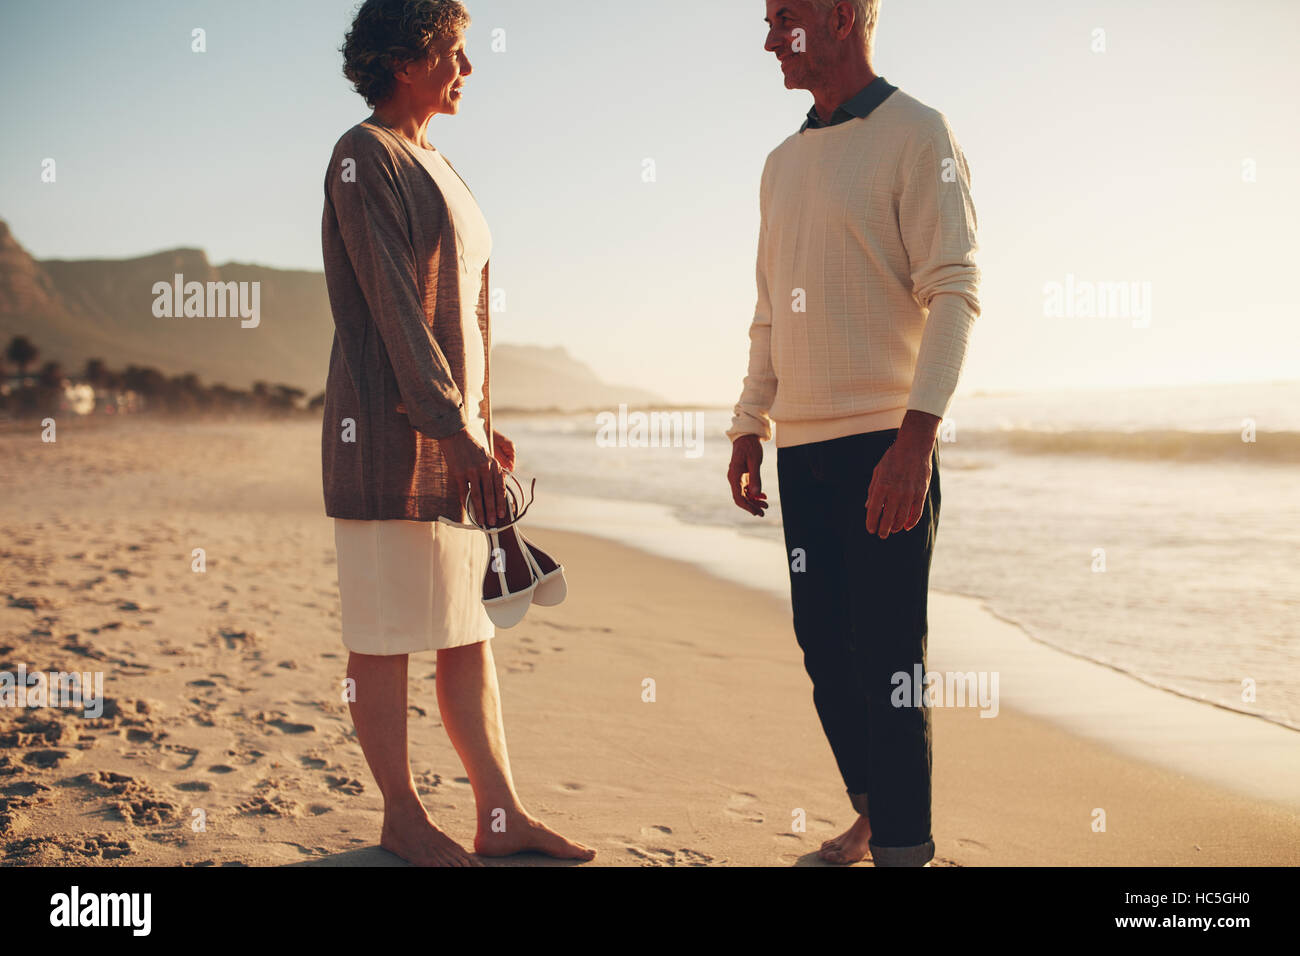 Disparó al aire libre de la feliz pareja sentados juntos en la playa y hablando. Hombre y mujer Senior senior en la orilla del mar. Foto de stock